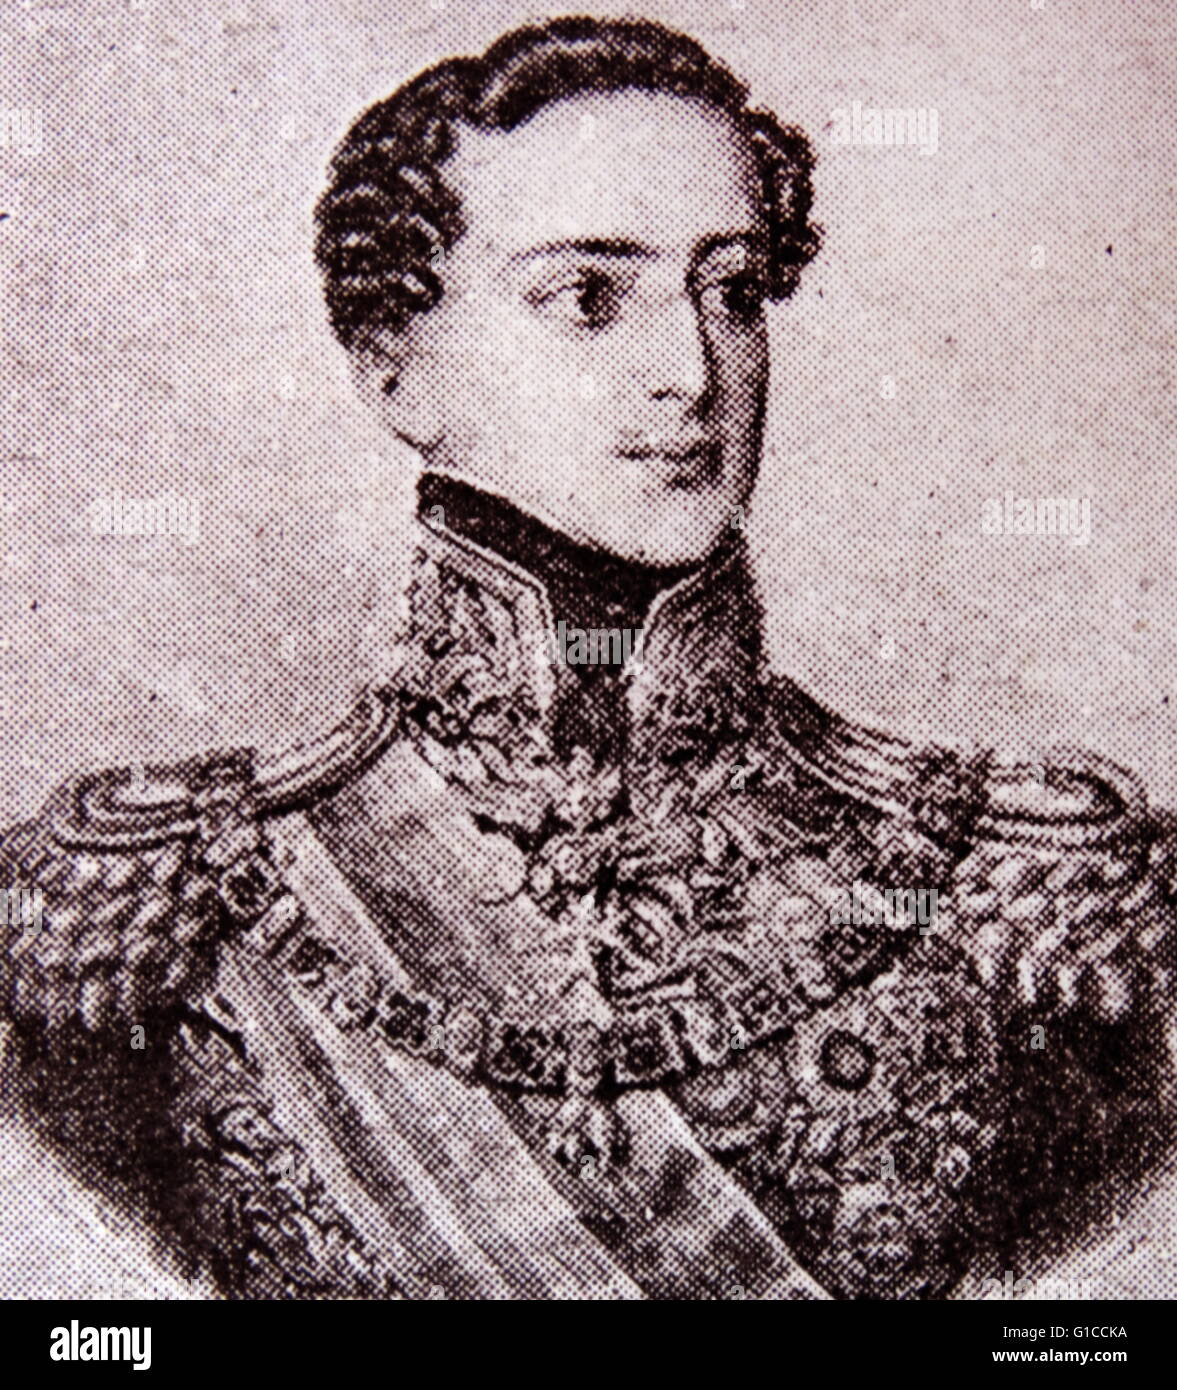 Ritratto di Miguel I del Portogallo (1802-1866), re di Portogallo. Datata del XIX secolo Foto Stock